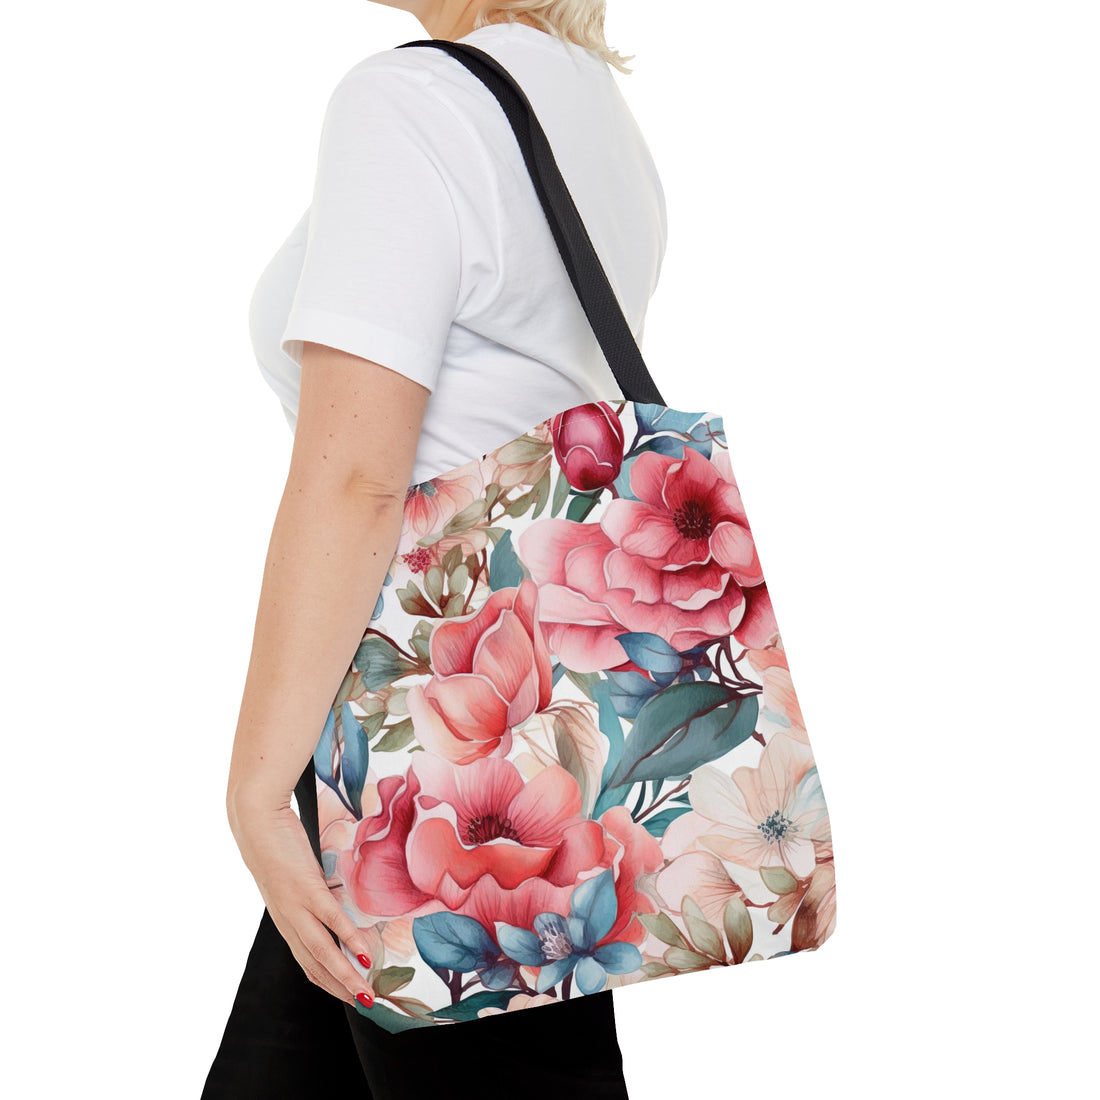 Prim Peach and Rose Floral Tote Bag